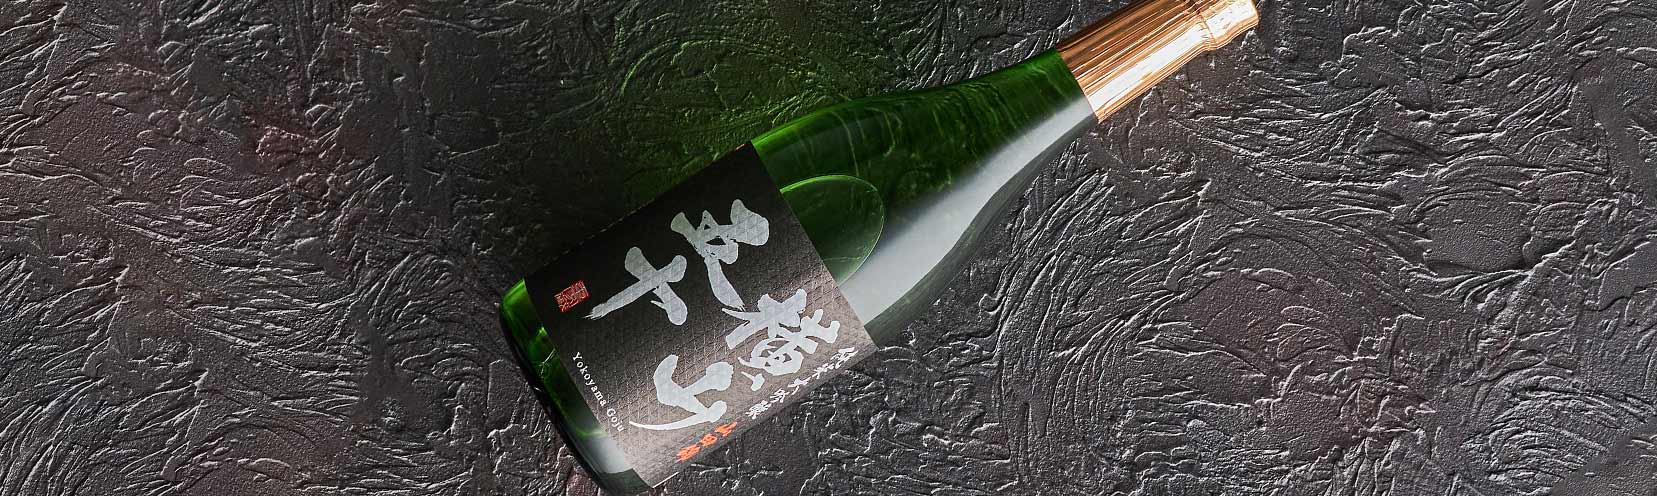 横山五十 純米大吟醸 黒ラベル